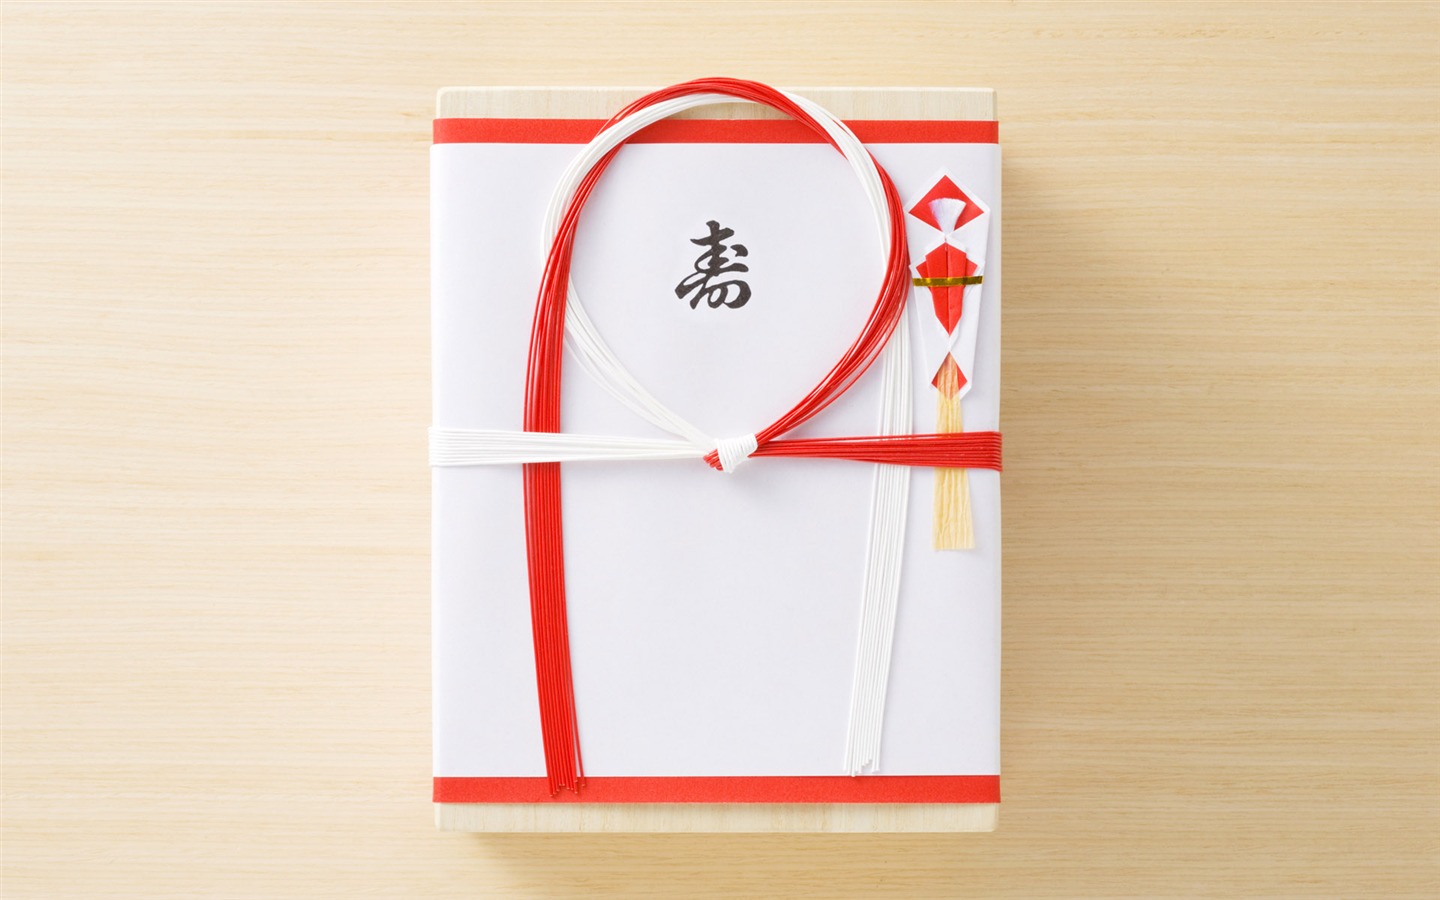 Fondos de año nuevo japonés Cultura (3) #16 - 1440x900